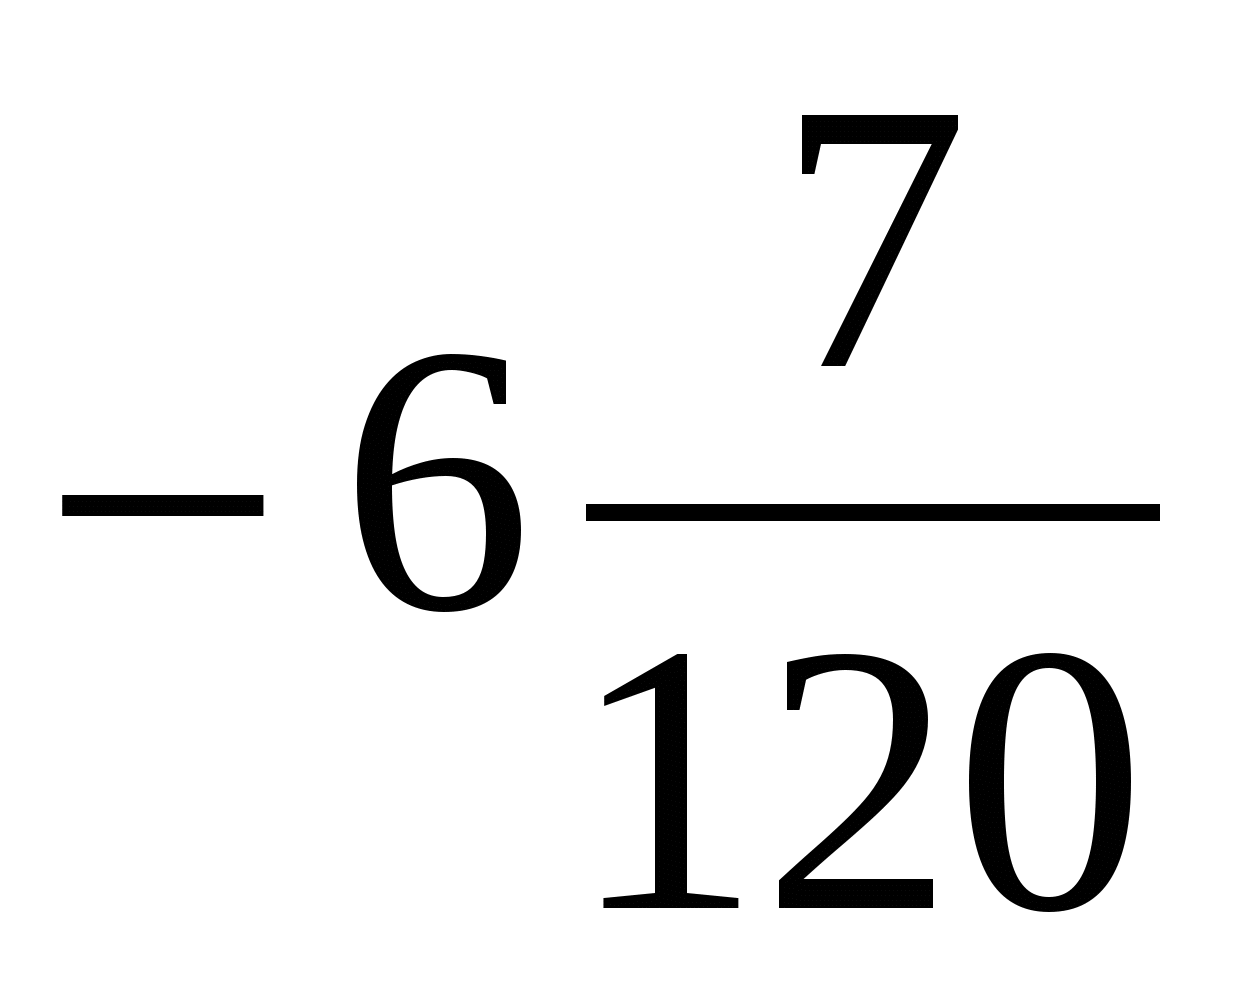 Использование перфокарт на уроках математики в 5-9 классах